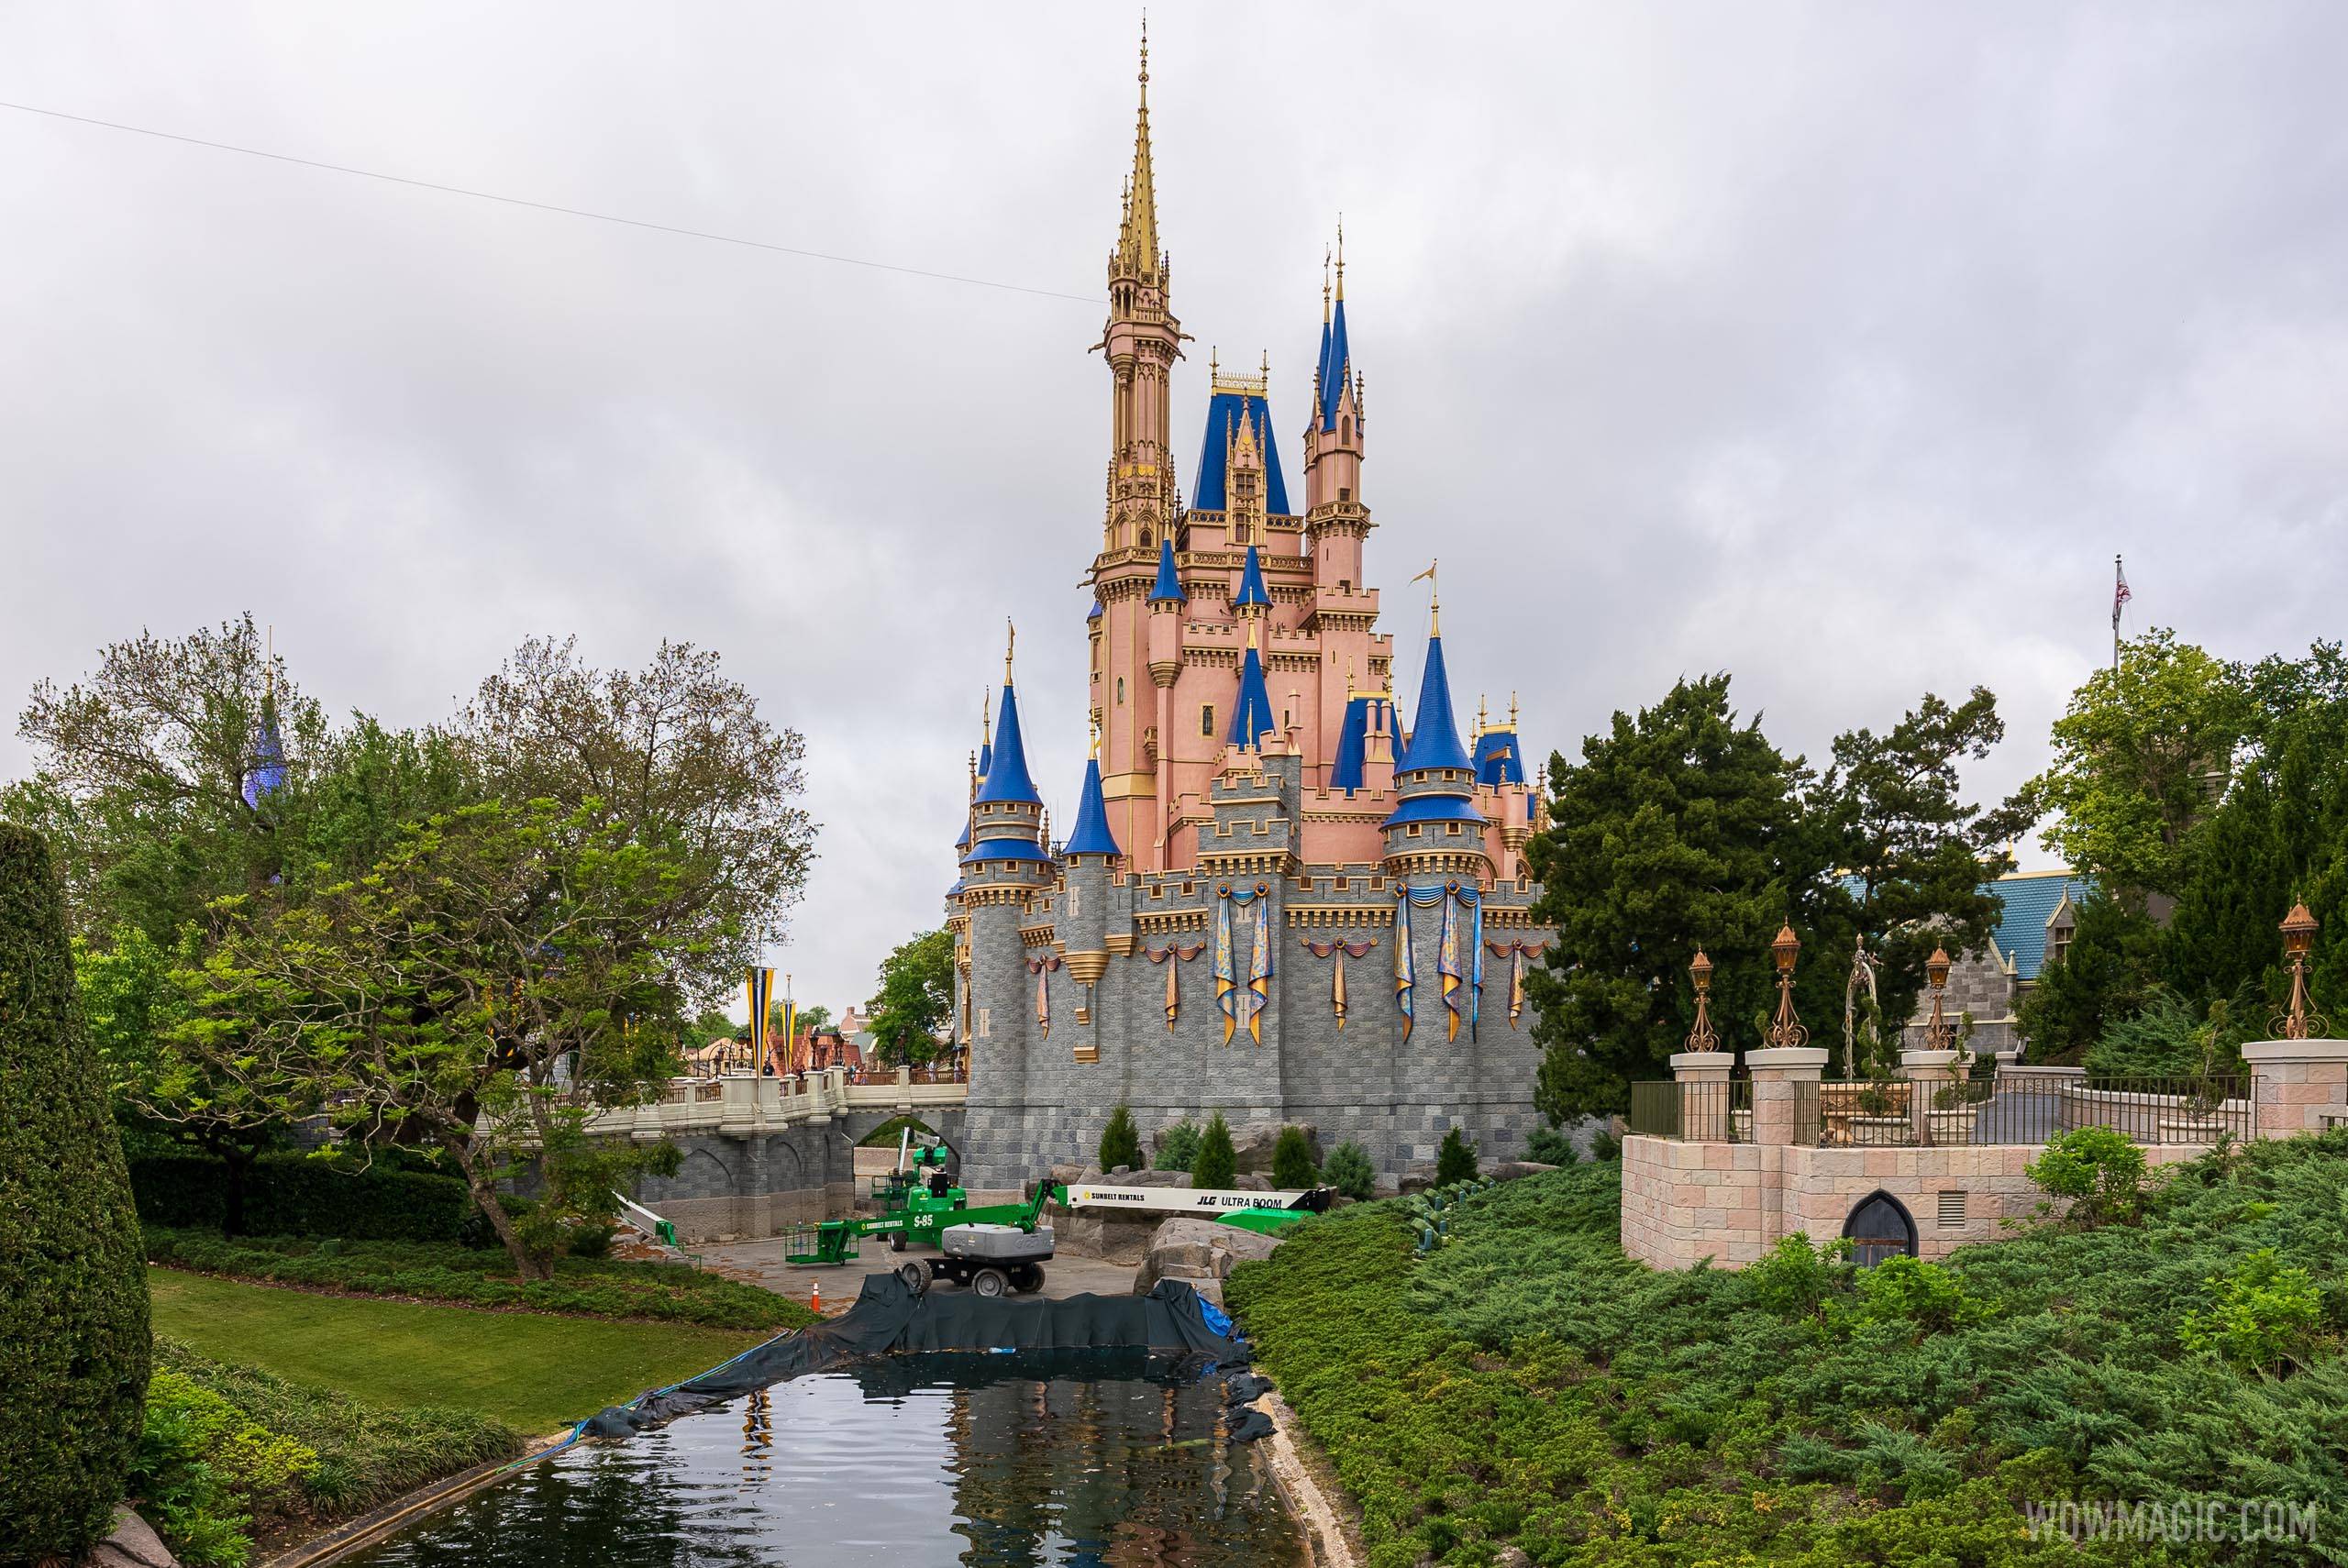 50th anniversary Cinderella Castle additions - March 29 2021